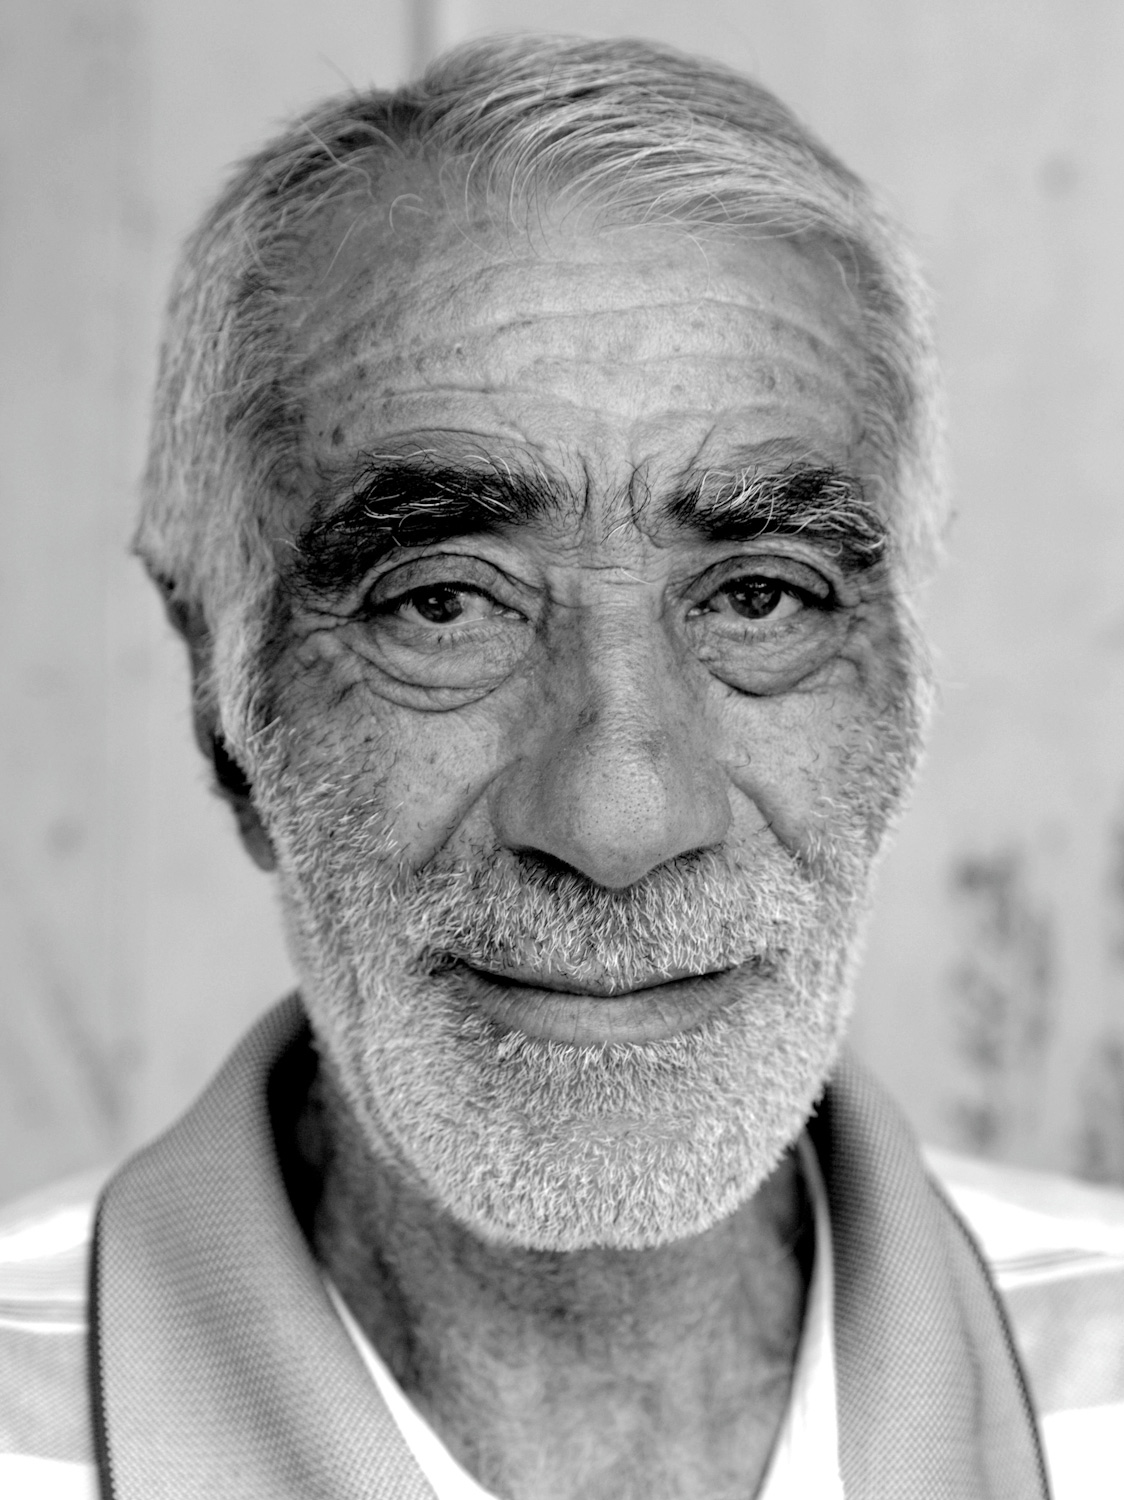 Portrait eines sympathischem, älteren Mannes, der verhalten in die Kamera lächelt